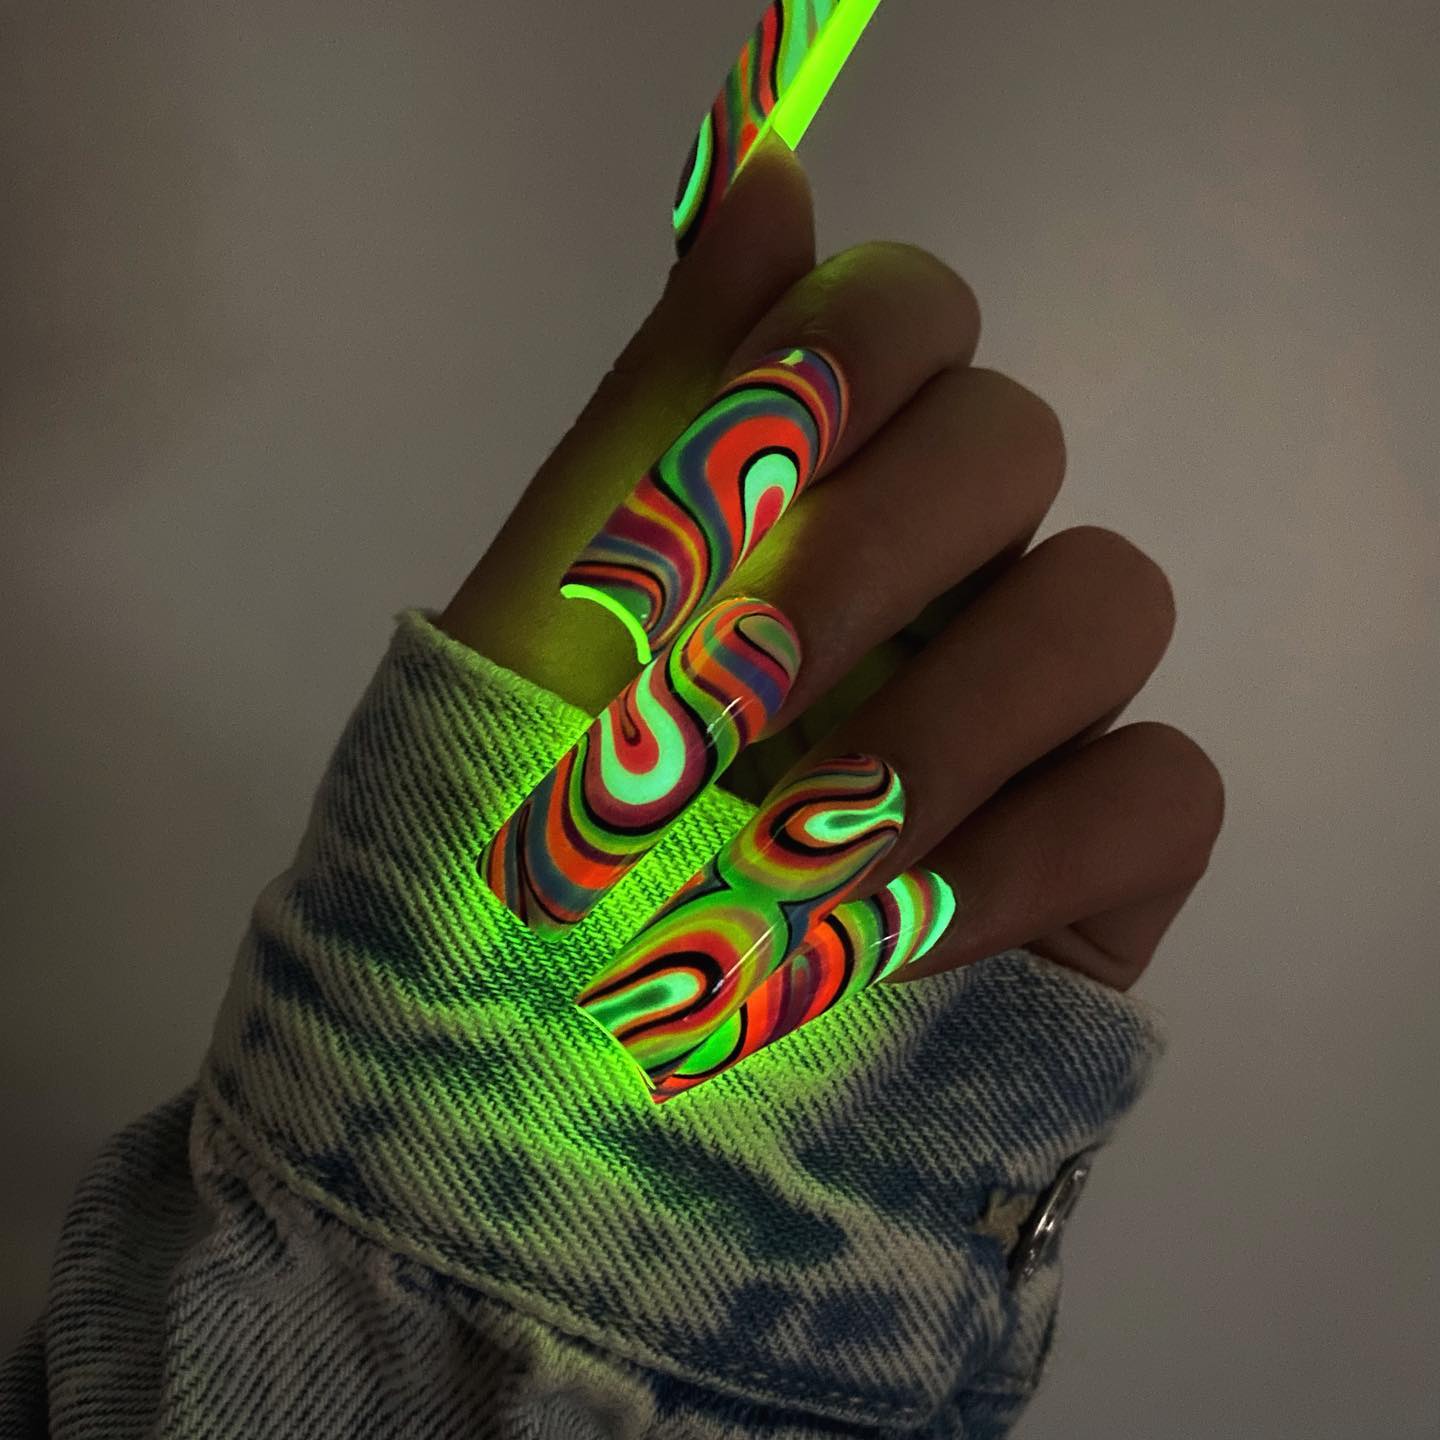 Acrylic Glow in the dark Nails with Swirls